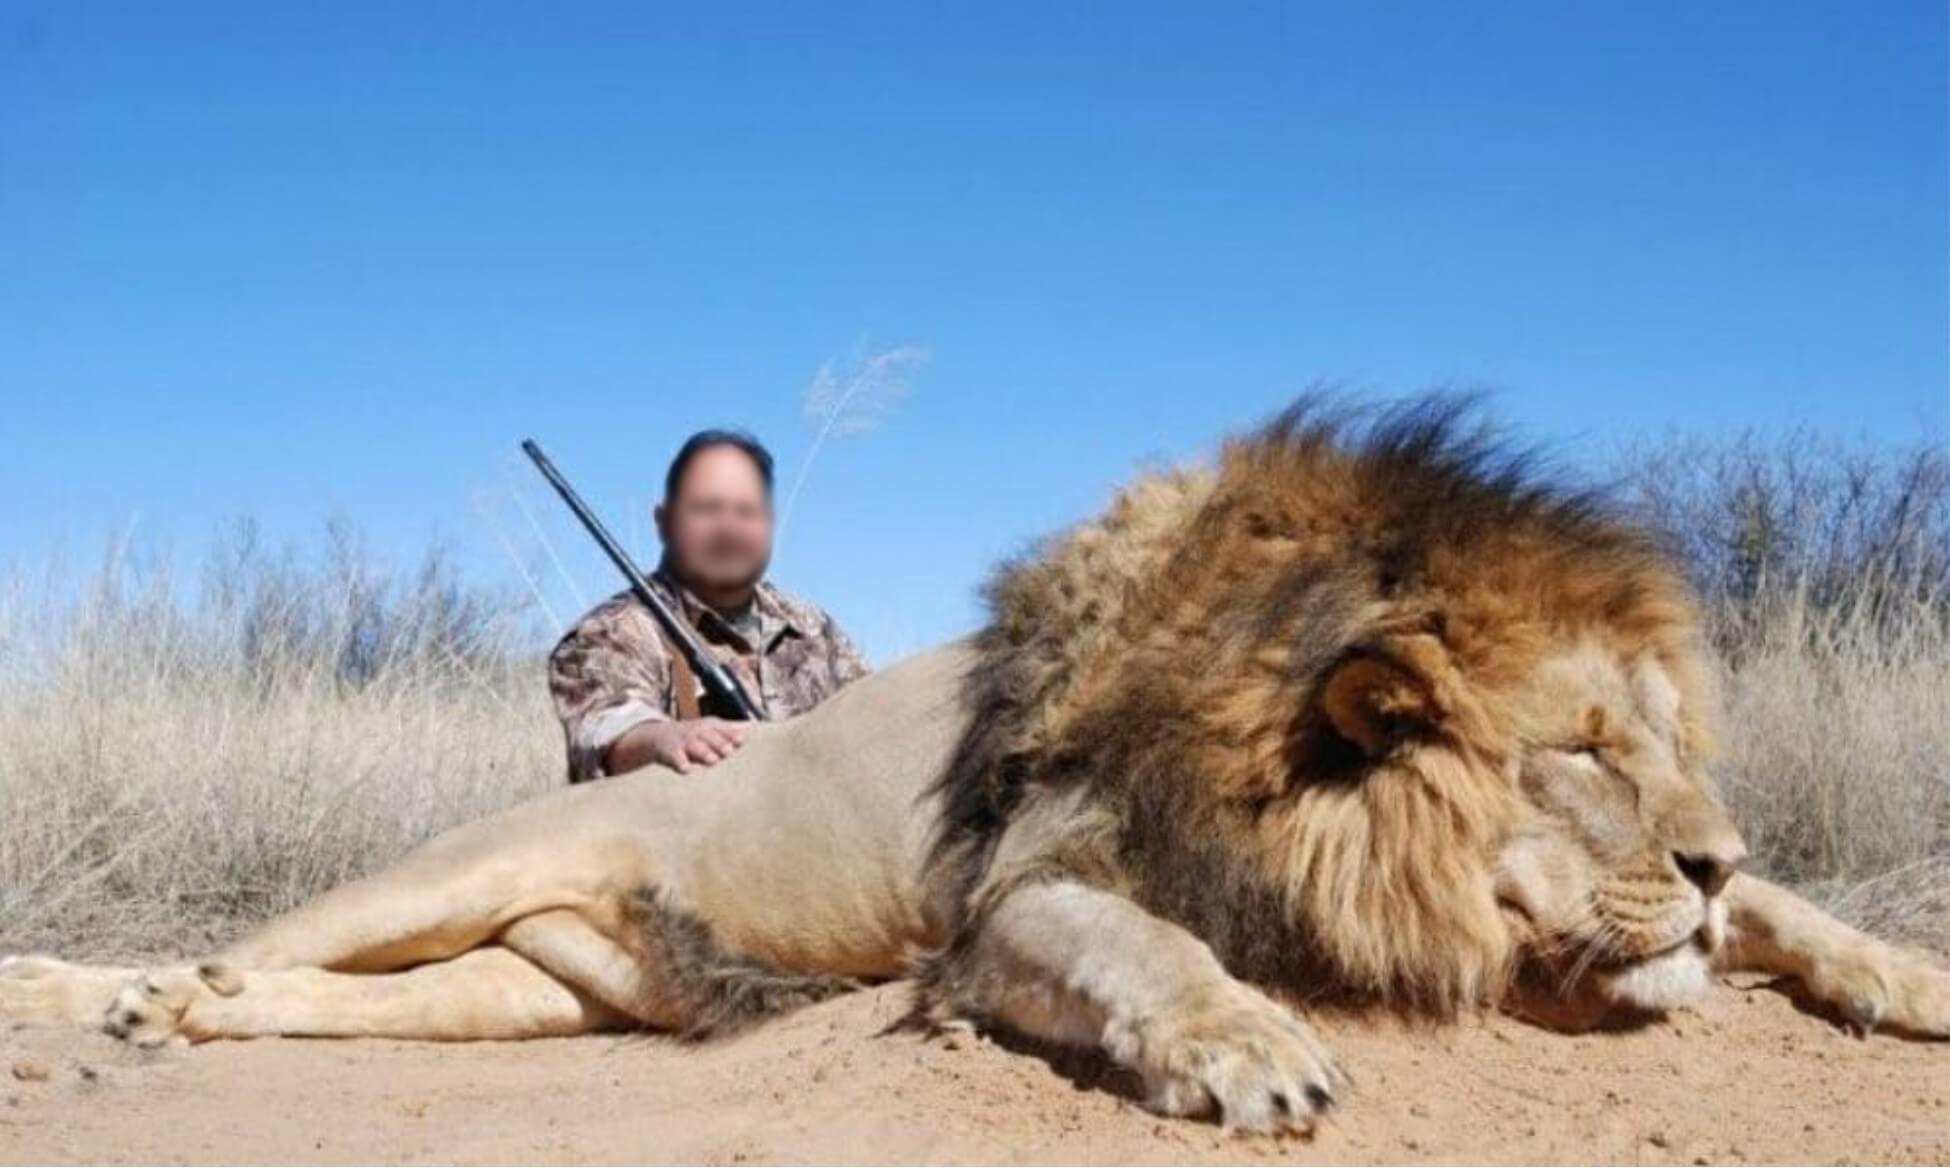 Lion trophy hunter